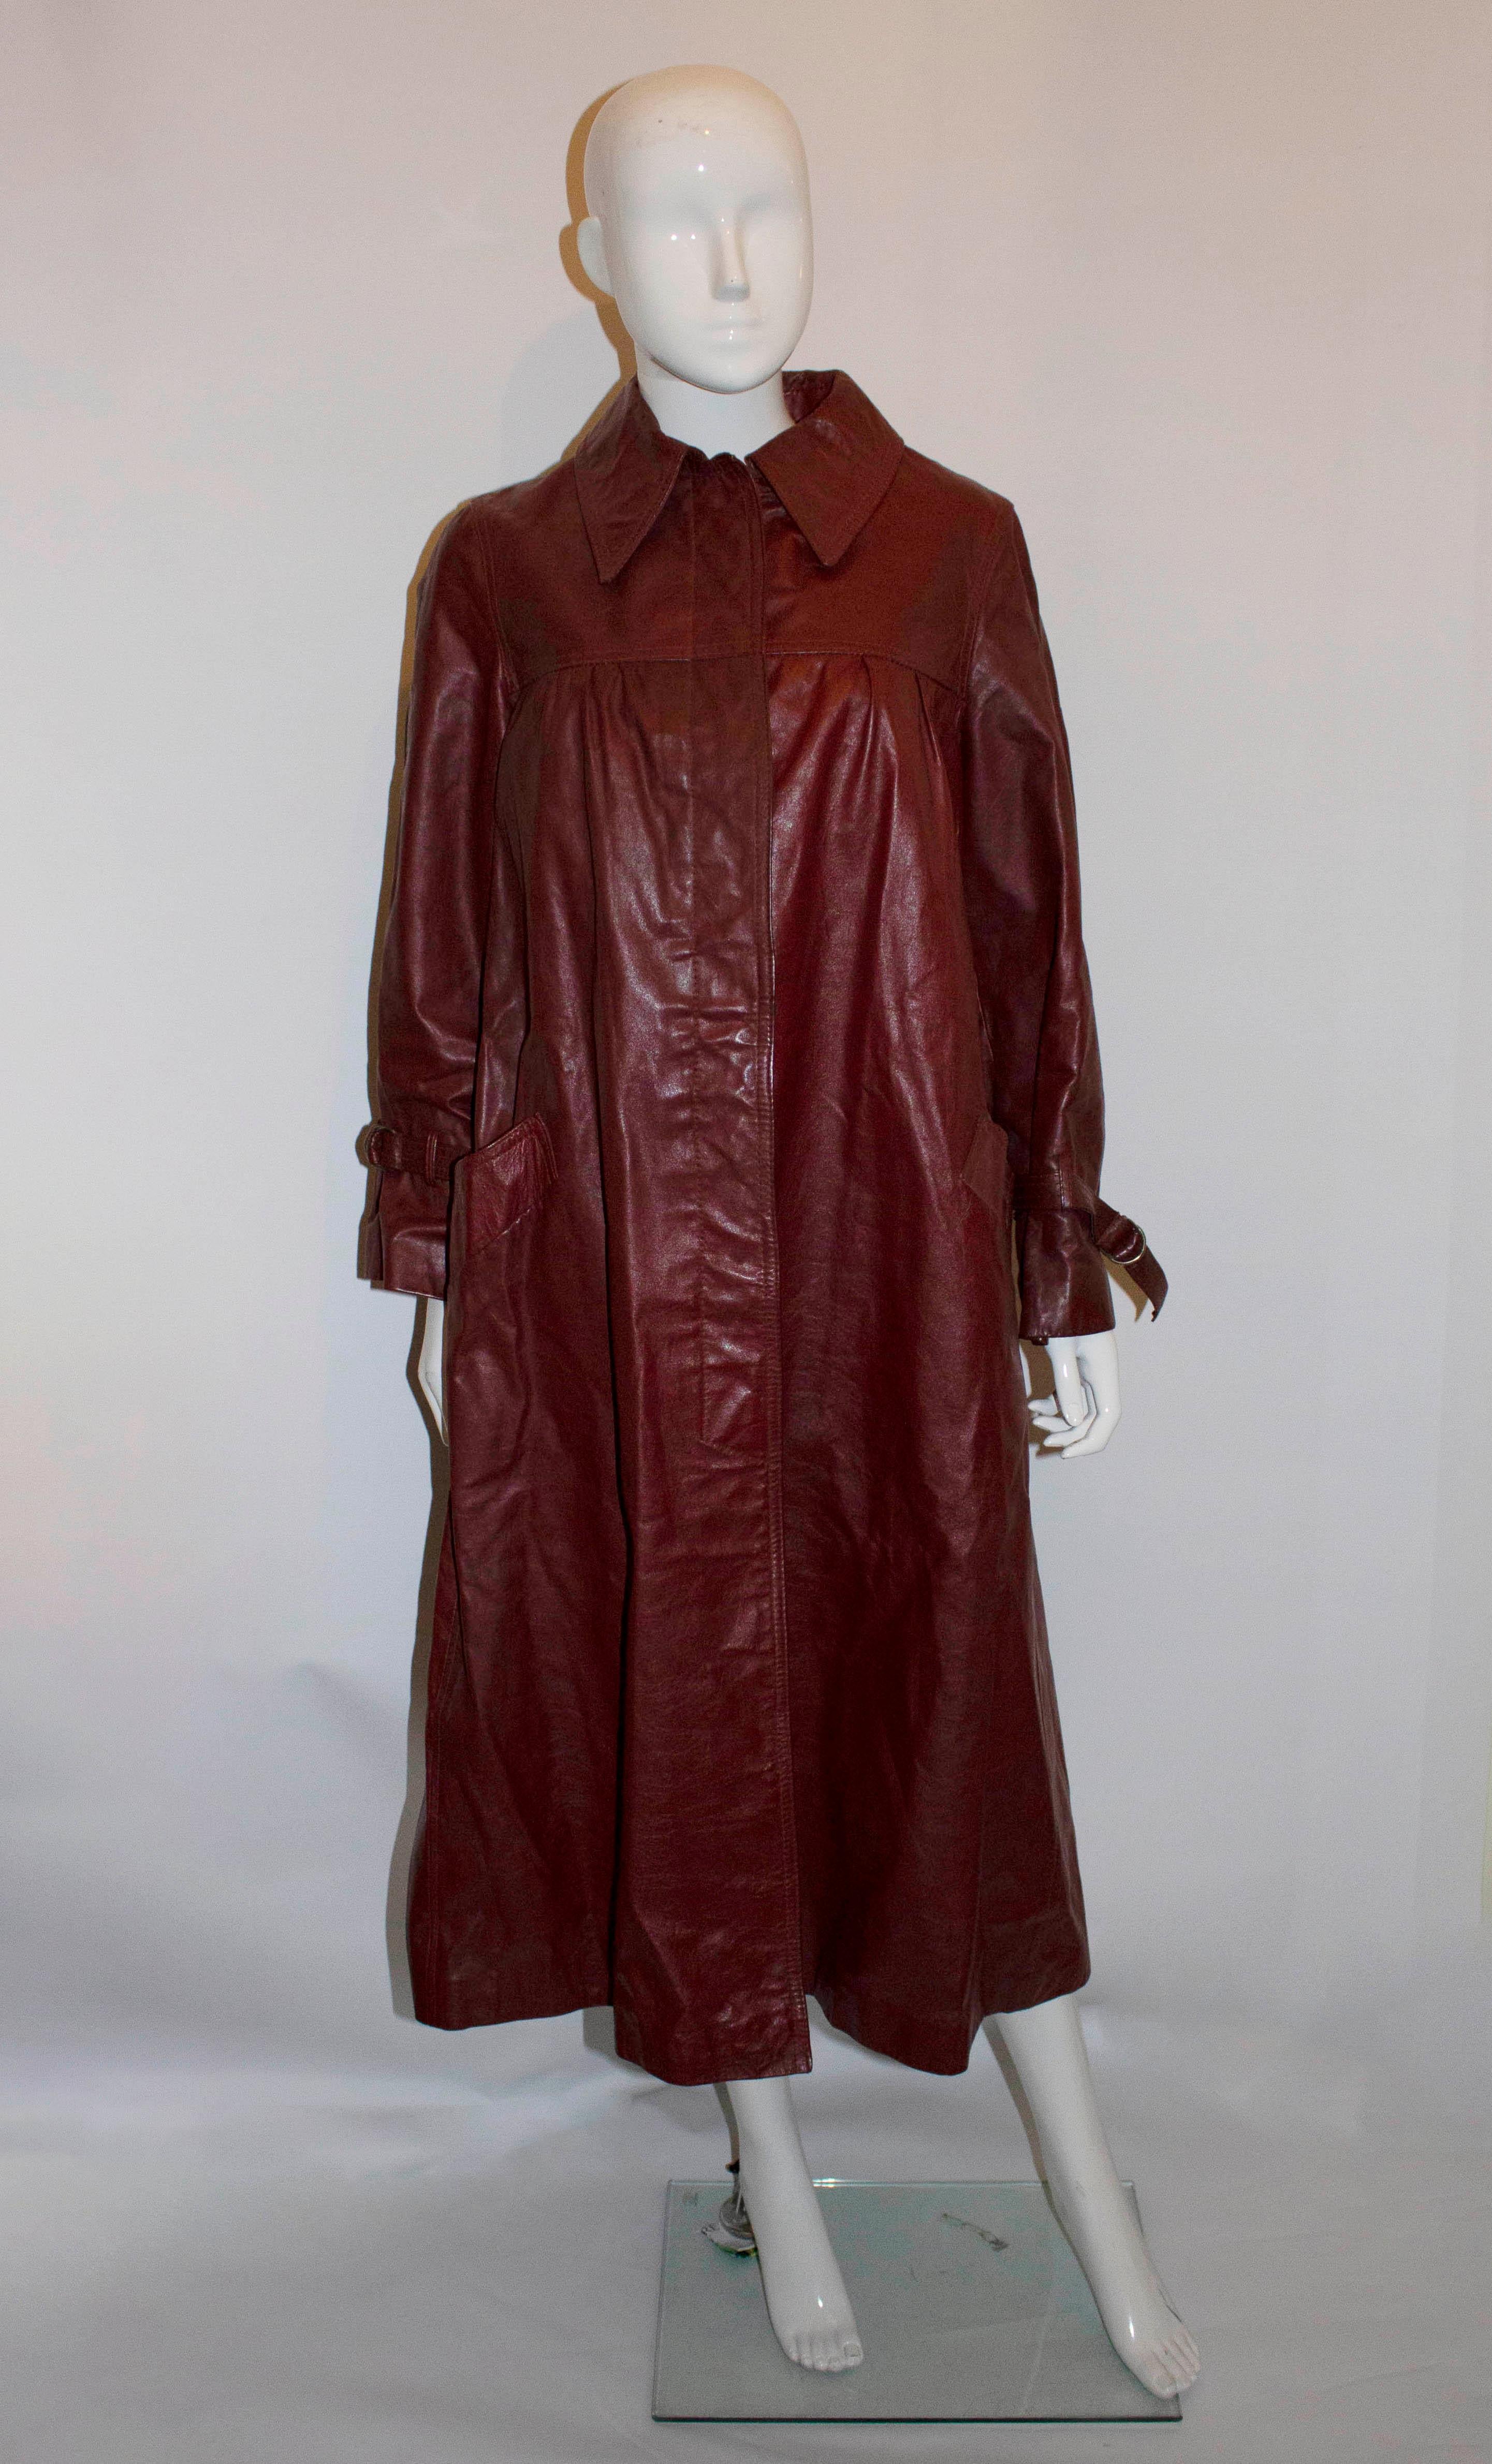 Un manteau en cuir élégant de BegedOr, conçu en Israël et fabriqué en Angleterre. De couleur bordeaux/marron, le manteau présente des plis à l'empiècement, une fente au dos, des poches à l'avant et est entièrement doublé. 

Mesures : Poitrine